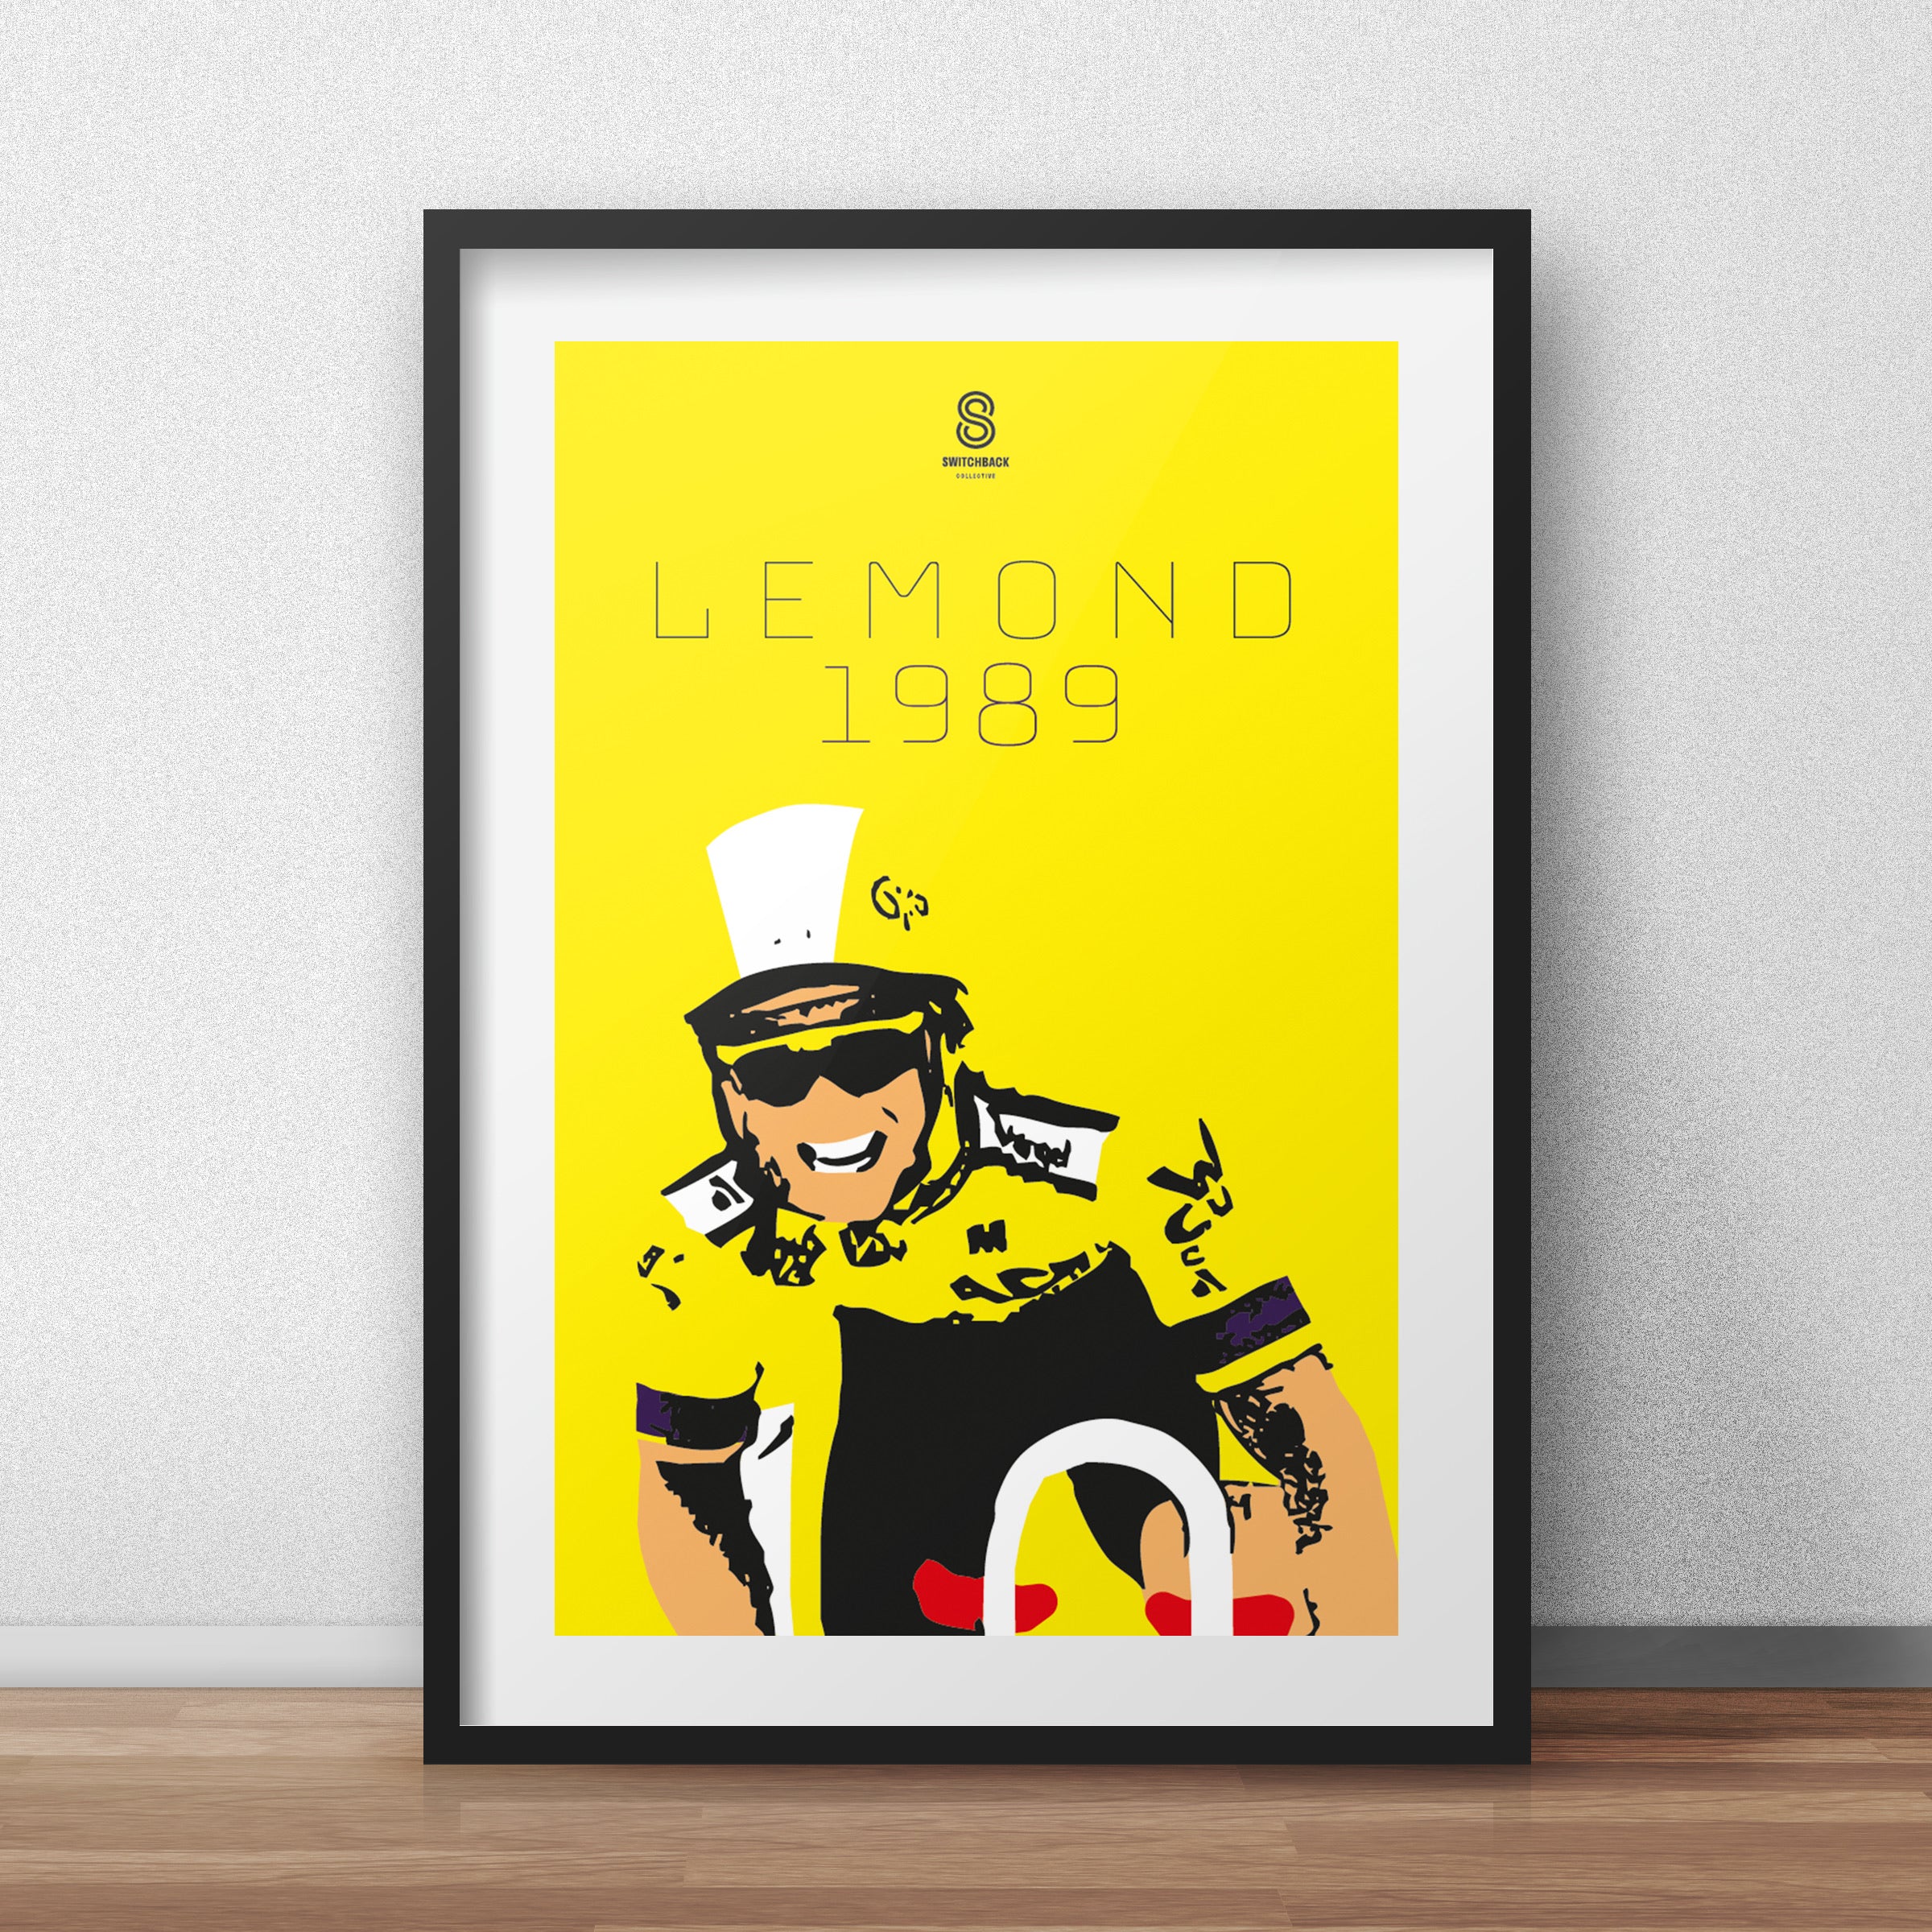 Greg Lemond Tour De France 1989 - Limited Edition Vintage cycling team print